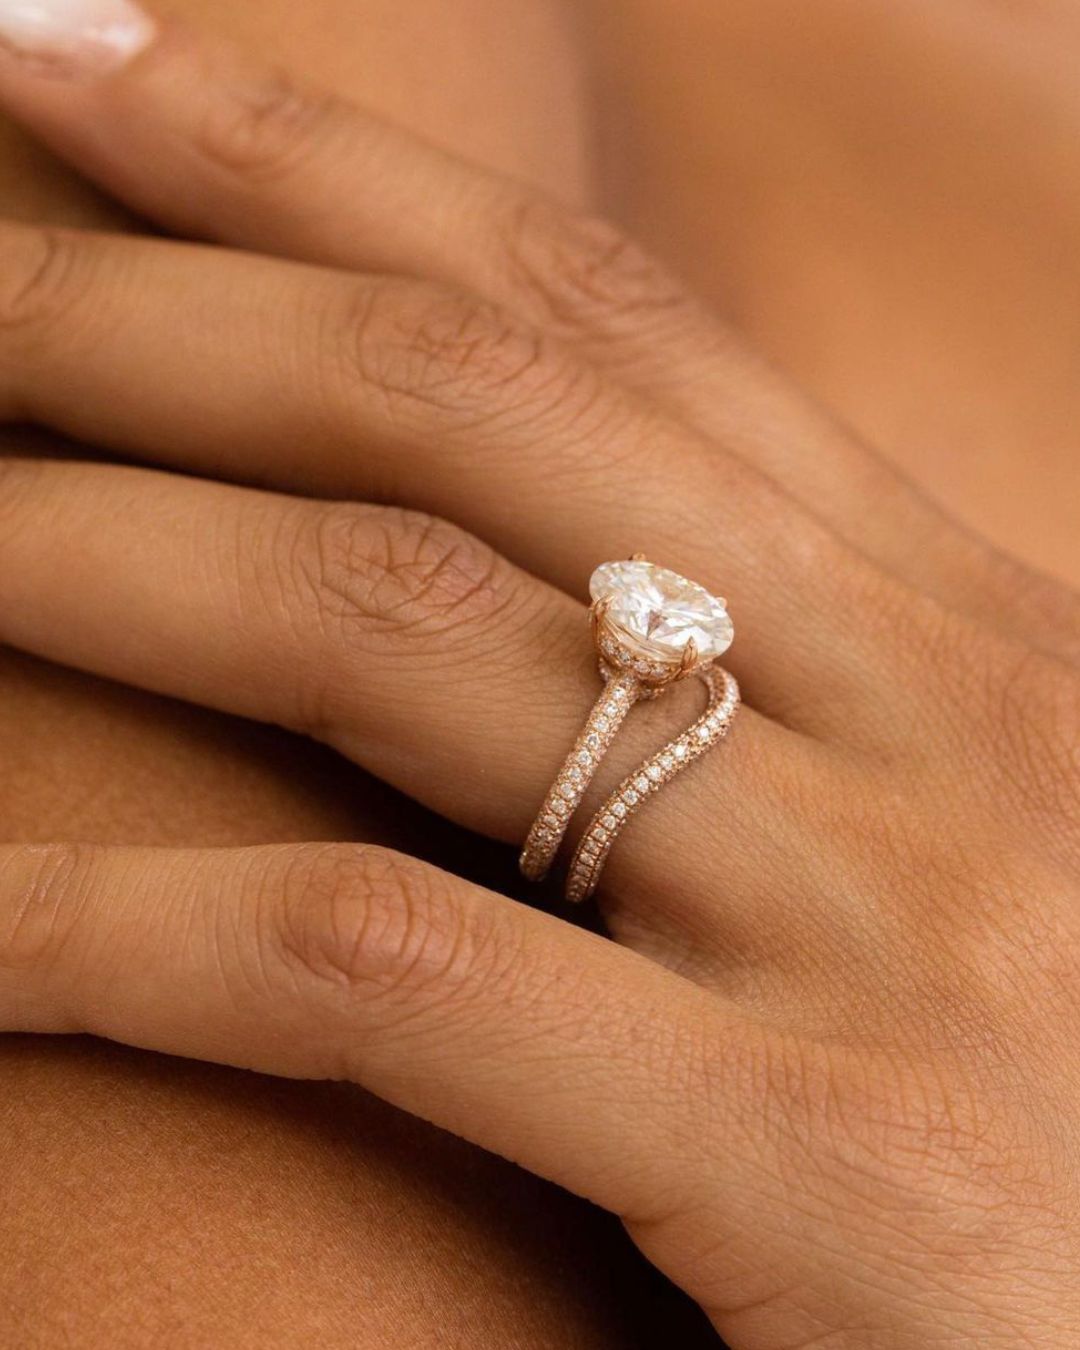 morganite engagement rings rose gold rings1